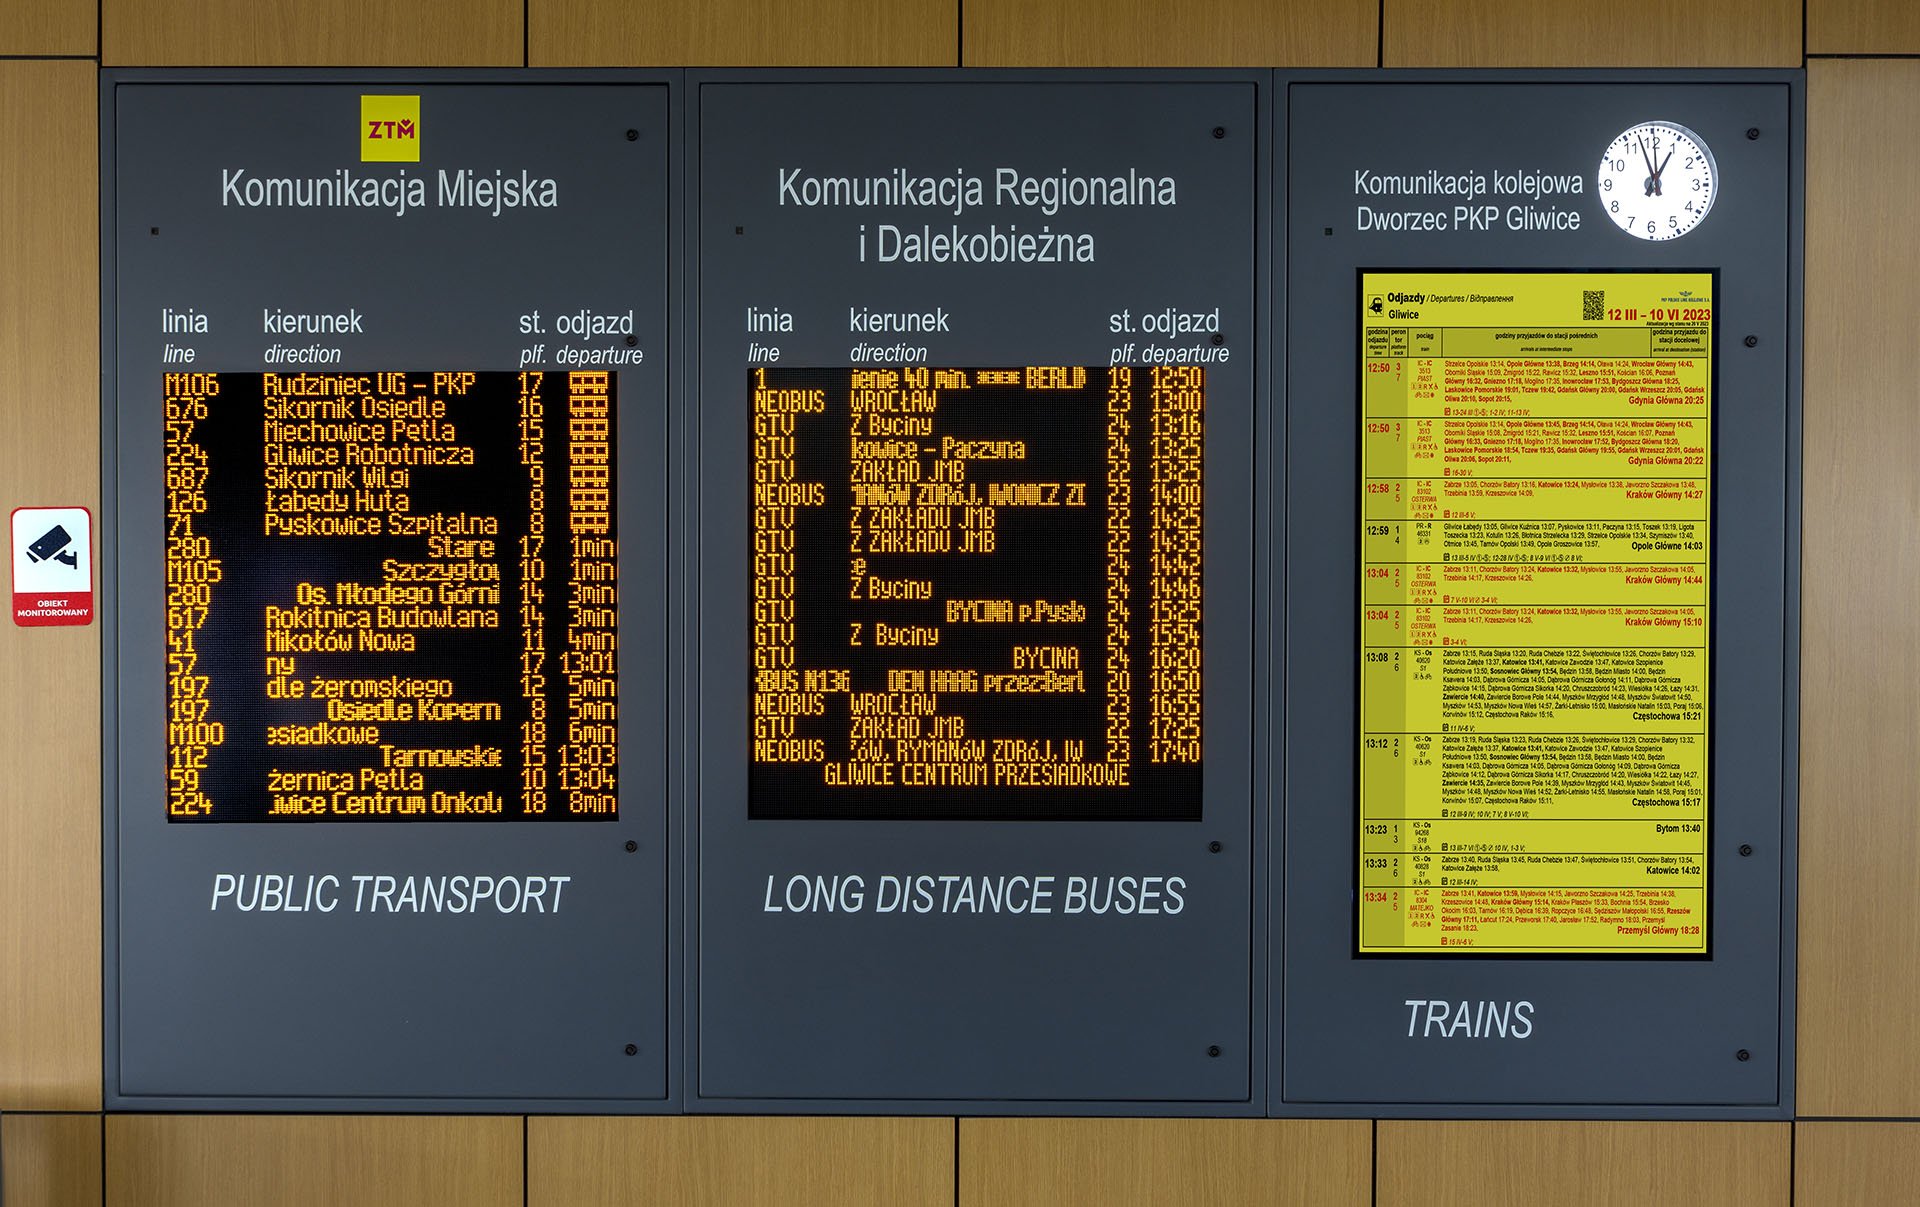 3in1 Passenger Information Board: amber LED real-time PID with built-in train departure TFT LCD display - Gliwice Transfer Center. Tablica 3w1 informacja pasażerska autobusowa lokalna, regionalna, międzynarodowa i kolejowa. Centrum przesiadkowe w Gliwicach.